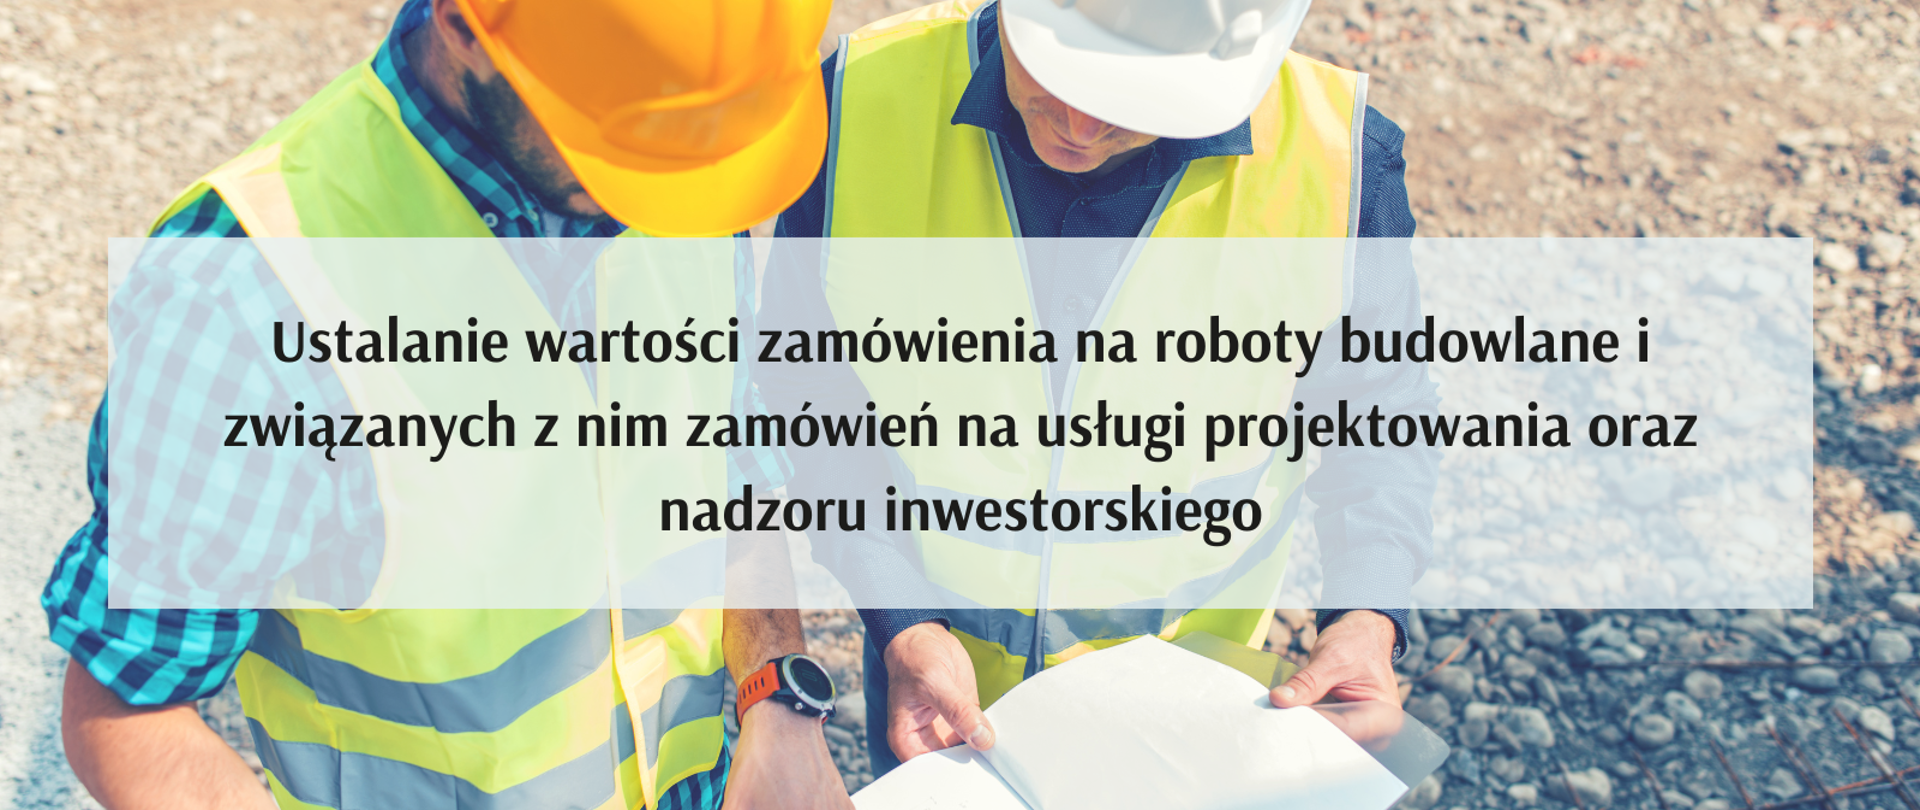 Ustalanie wartości zamówienia na roboty budowlane i związanych z nim zamówień na usługi projektowania oraz nadzoru inwestorskiego